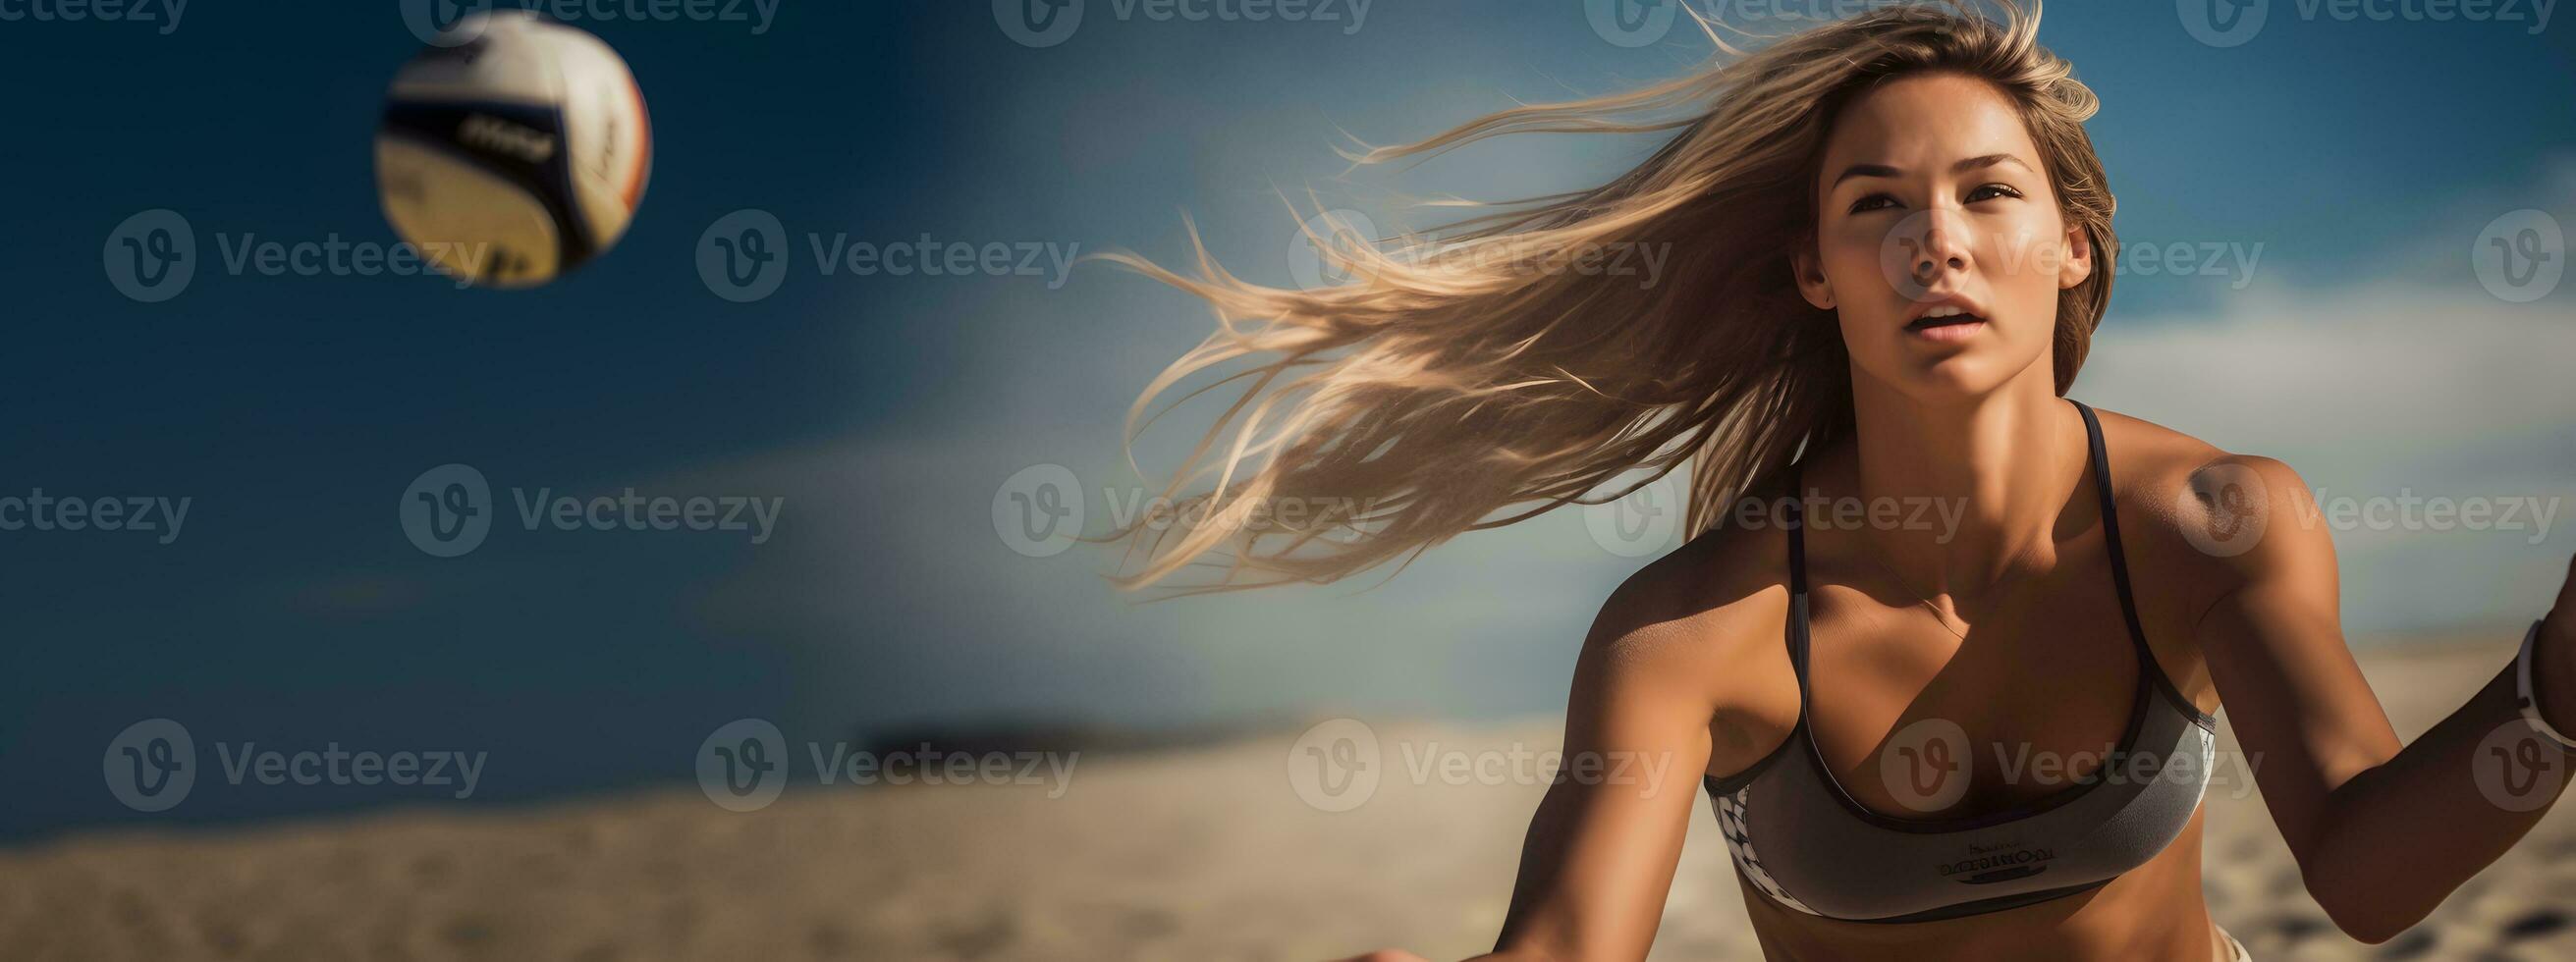 foto van een vrouw spelen strand volleybal in een bikini